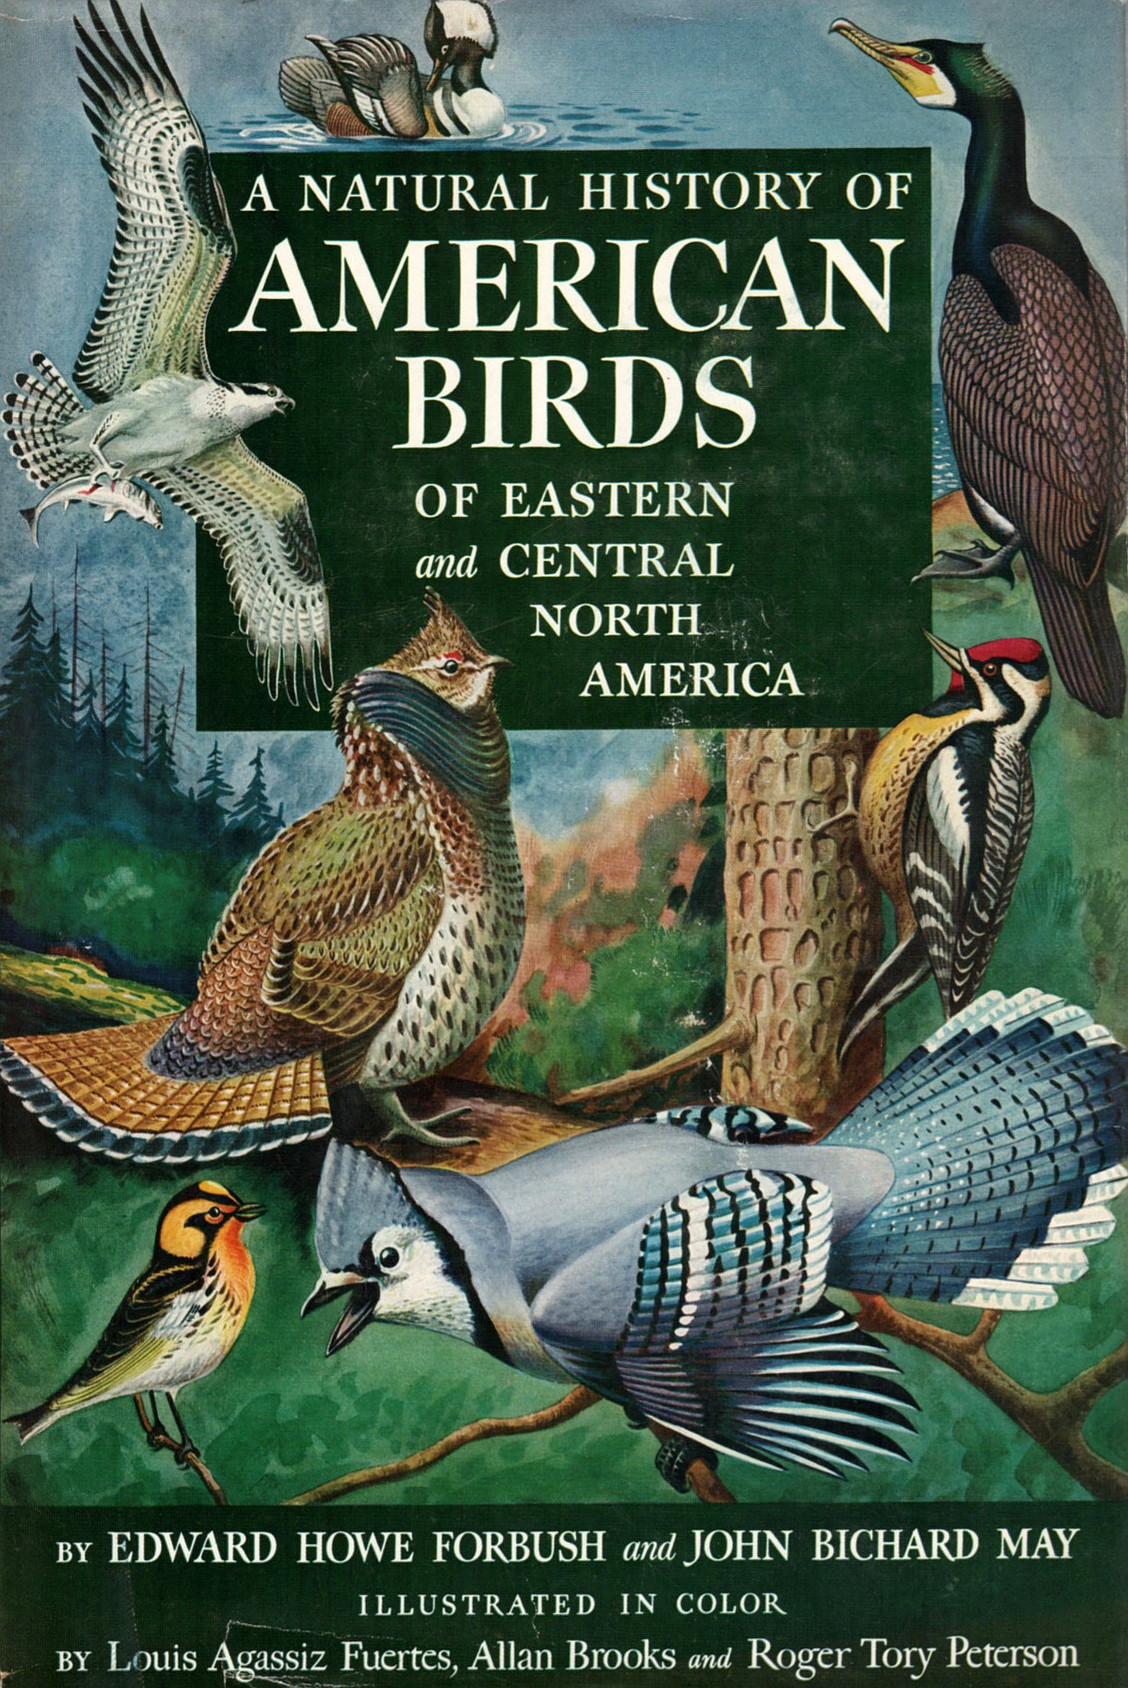 A Natural History of American Birds (Forbush & May)